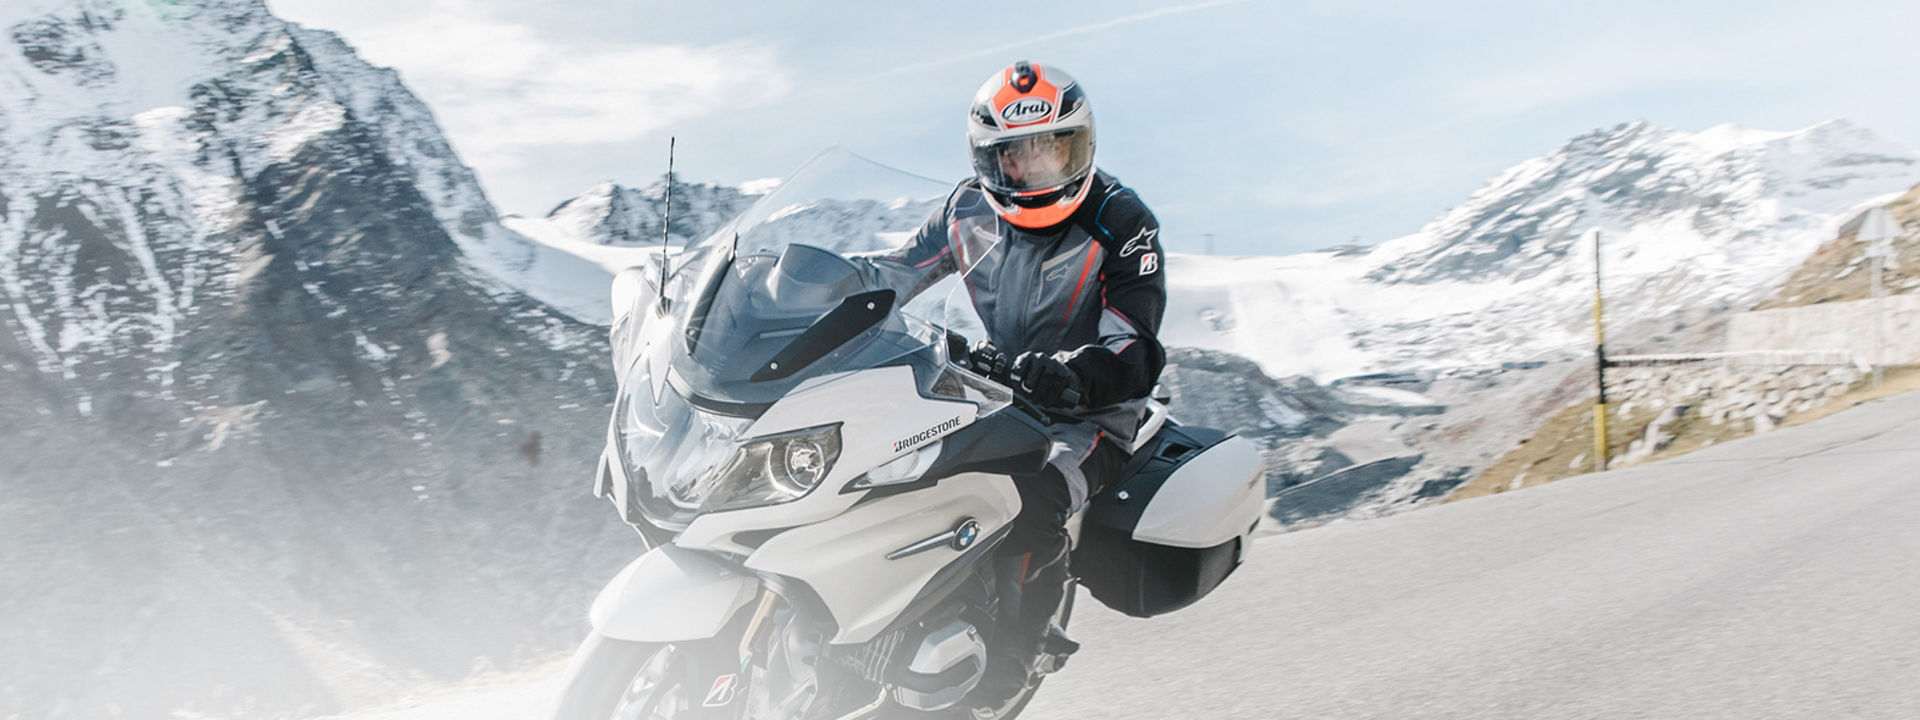 Dette bildet viser en motorsyklist som kjører motorsykkel med Bridgestone touring dekk gjennom en naturskjønn vei med fjell i bakgrunn.